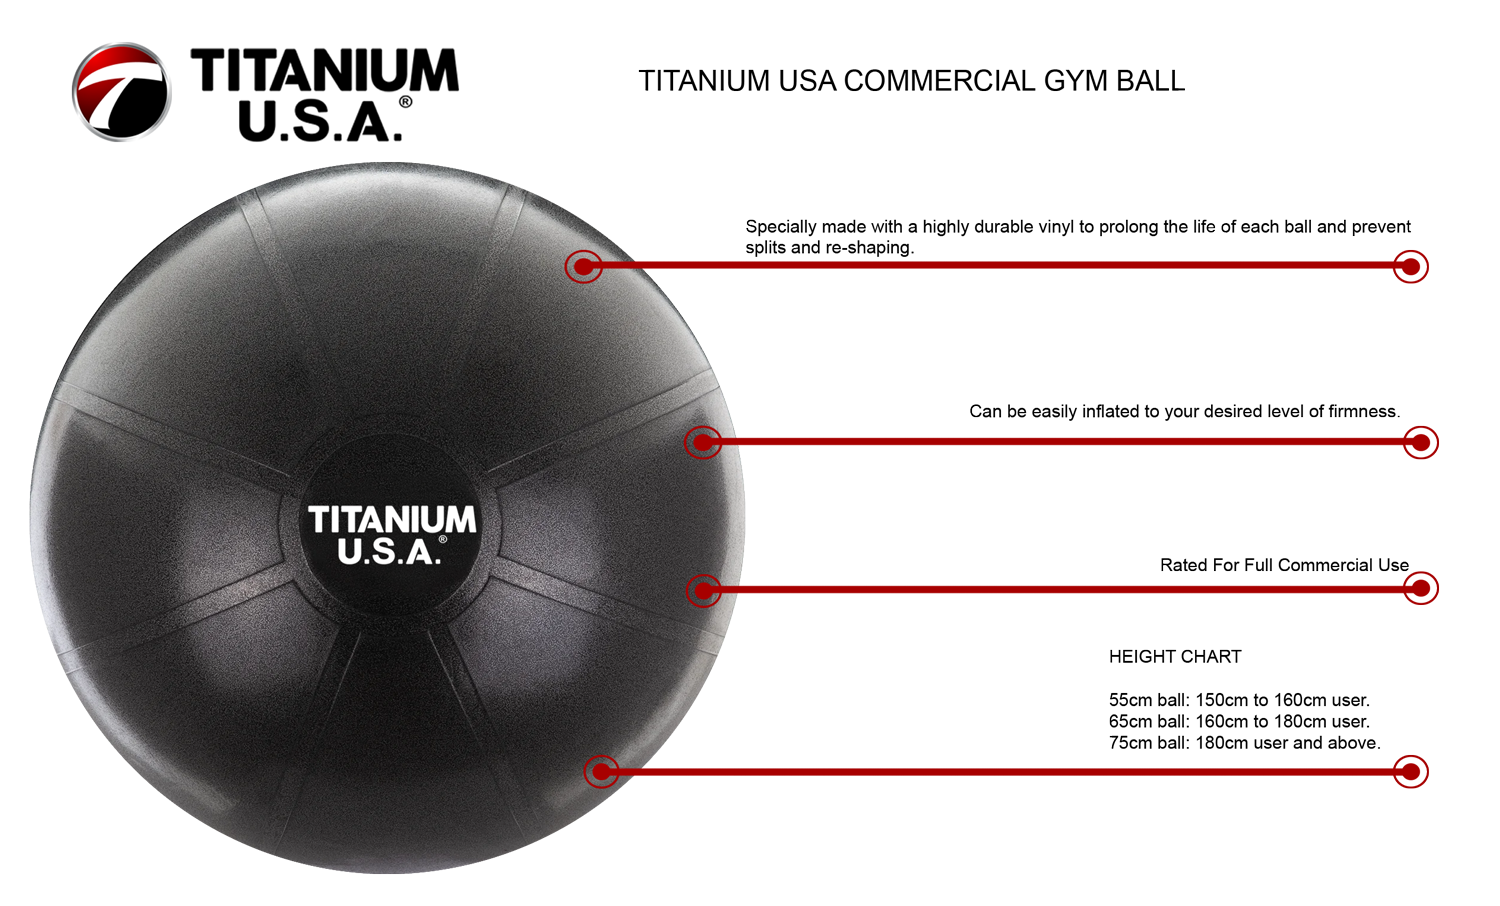 TITANIUM USA 75CM COMMERCIAL GYM BALL